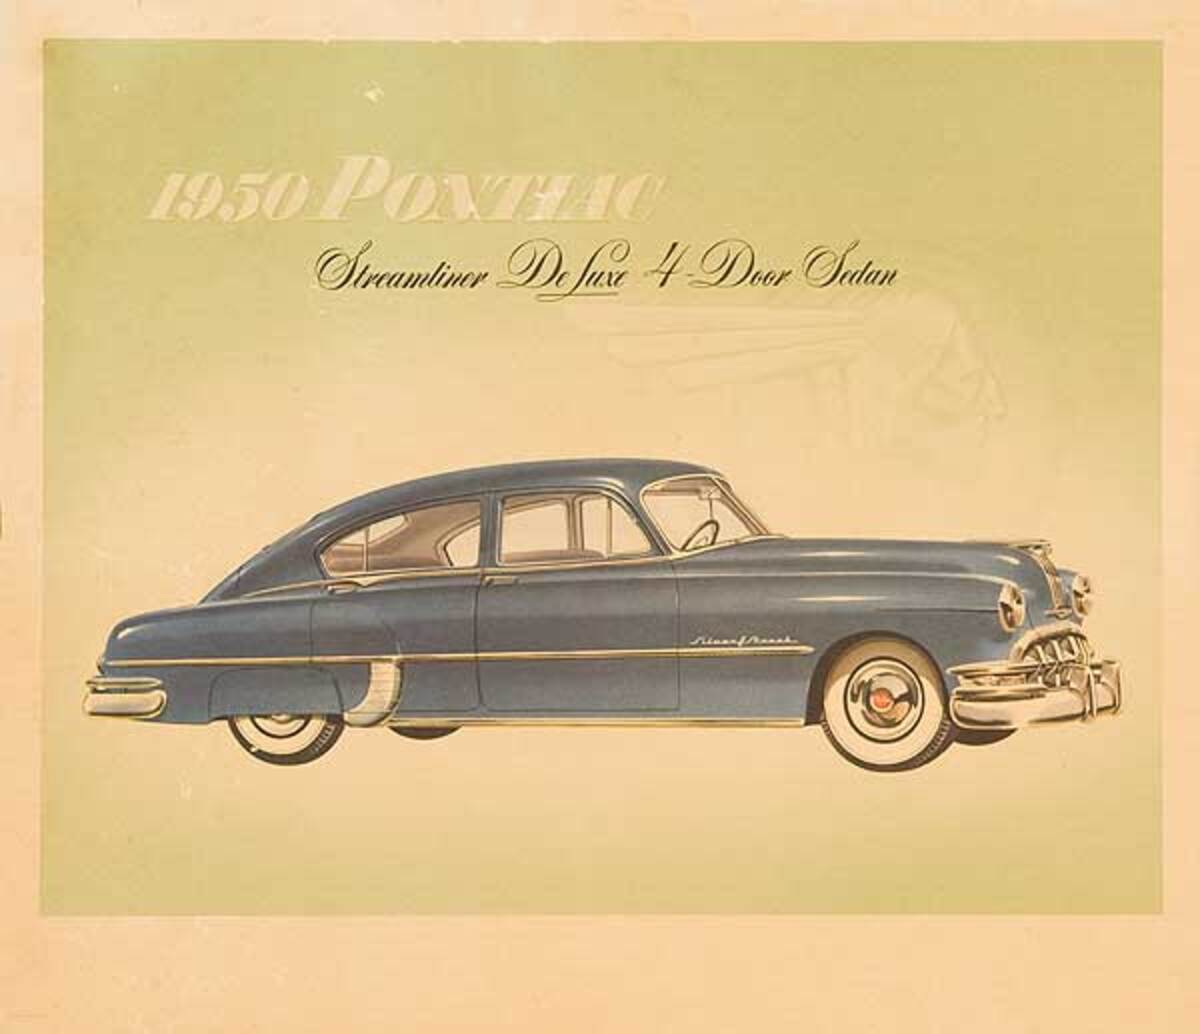 1950 Pontiac Streamliner Deluxe 4 Door Sedan Business Original Showroom Advertising Poster